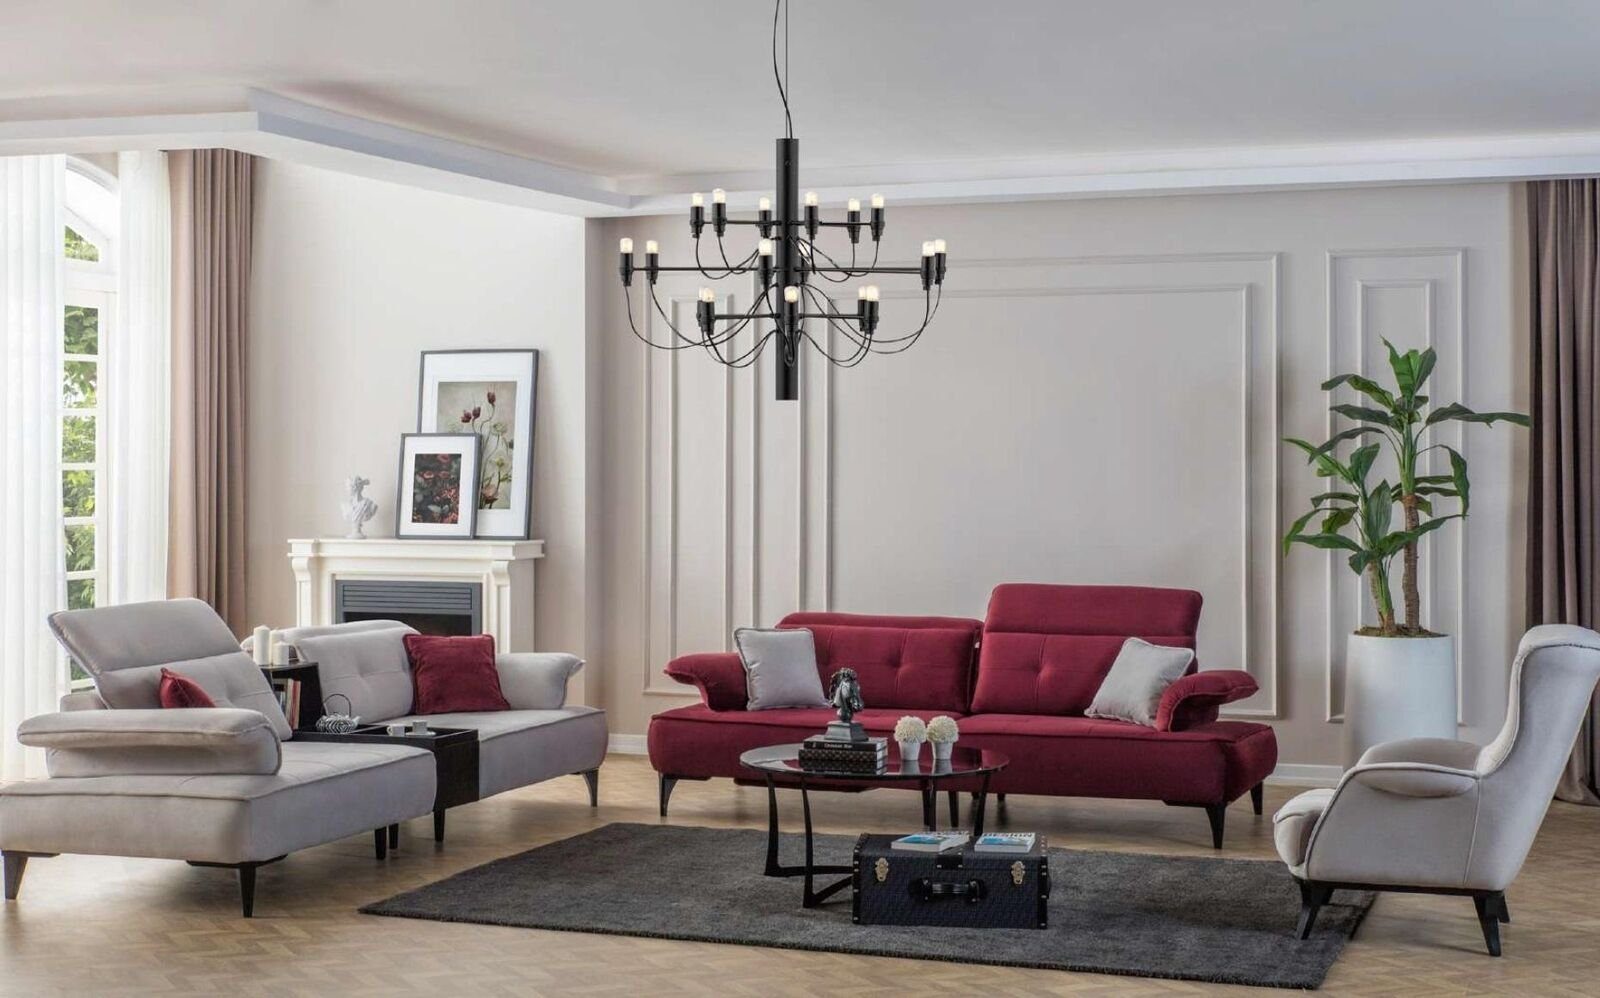 JVmoebel 3 Modern Sofa Zweisitzer Grau 1 Neu, Sofa Stoff Teile Luxus Sofas Wohnzimmer Sitzer